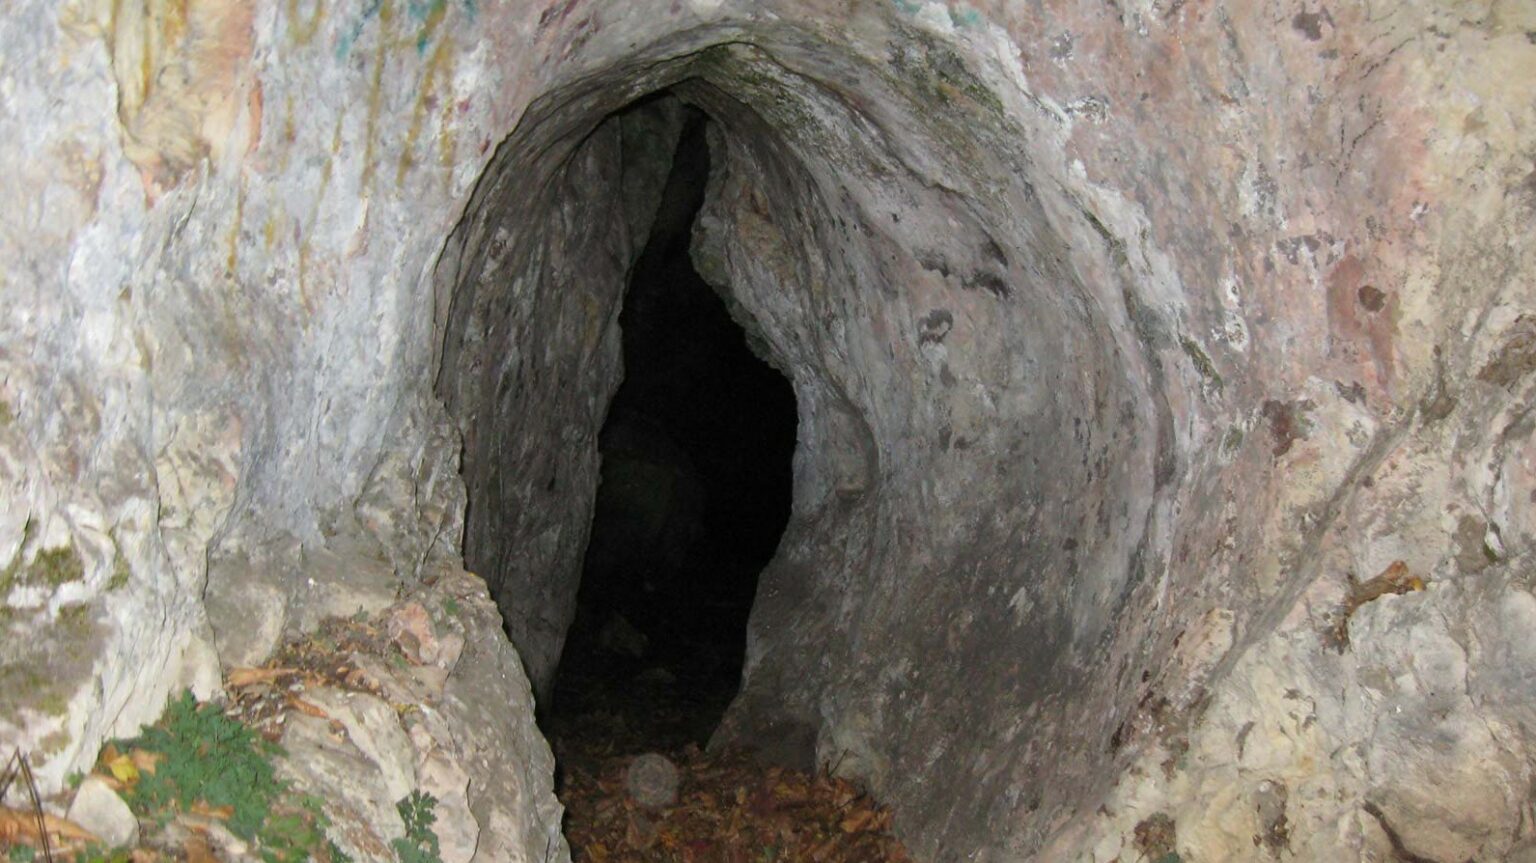 غار سوباتان | غار گنج نامه | تالش